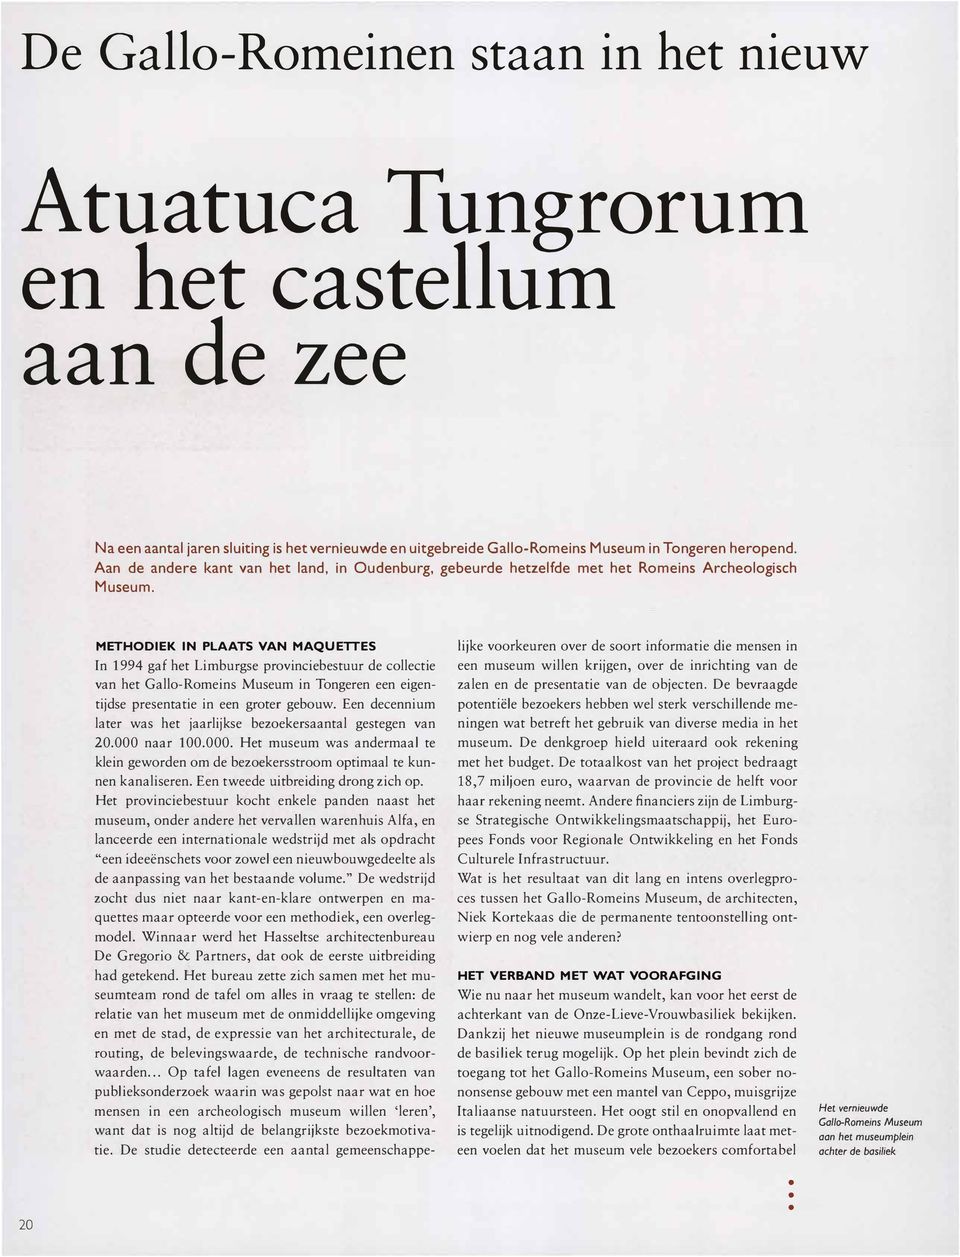 METHODIEK IN PLAATS VAN MAQUETTES In 1994 gaf het Limburgse provinciebestuur de collectie van het Gallo-Romeins Museum in Tongeren een eigentijdse presentatie in een groter gebouw.